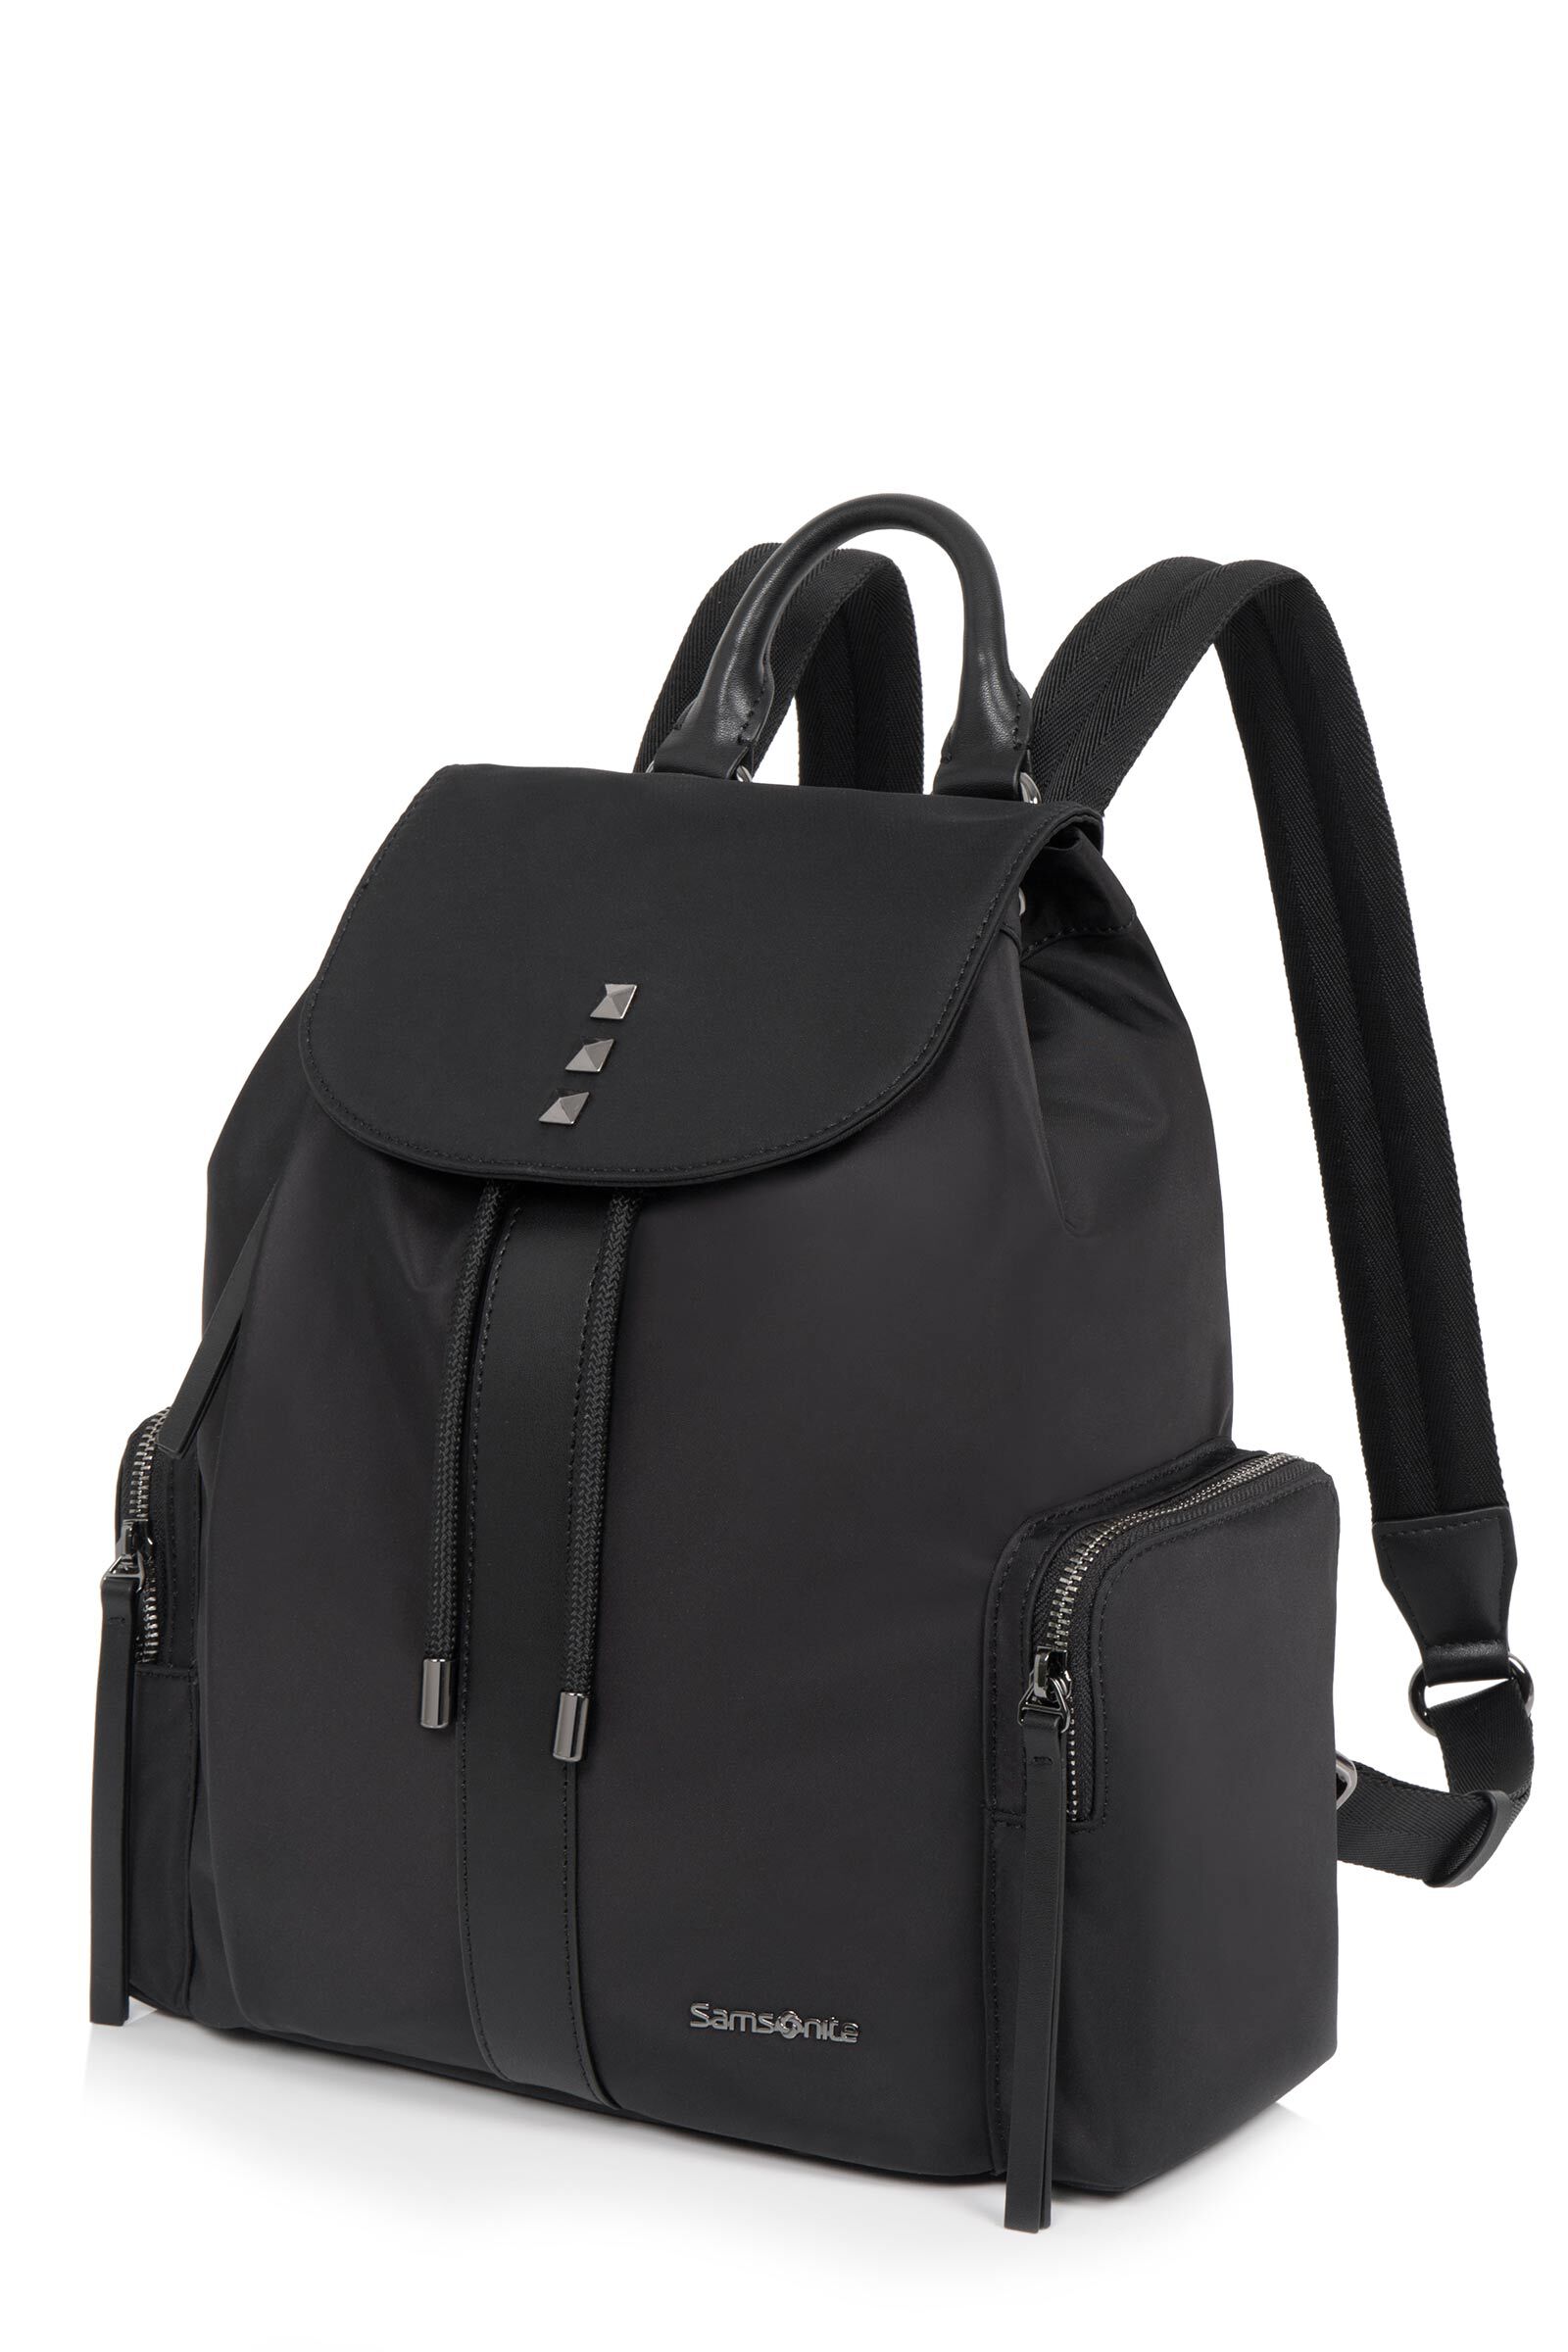 New Vintage SAMSONITE BLACK LABEL SIGNAT Micro Attache Shoulder Bag Clutch  Bag | eBay